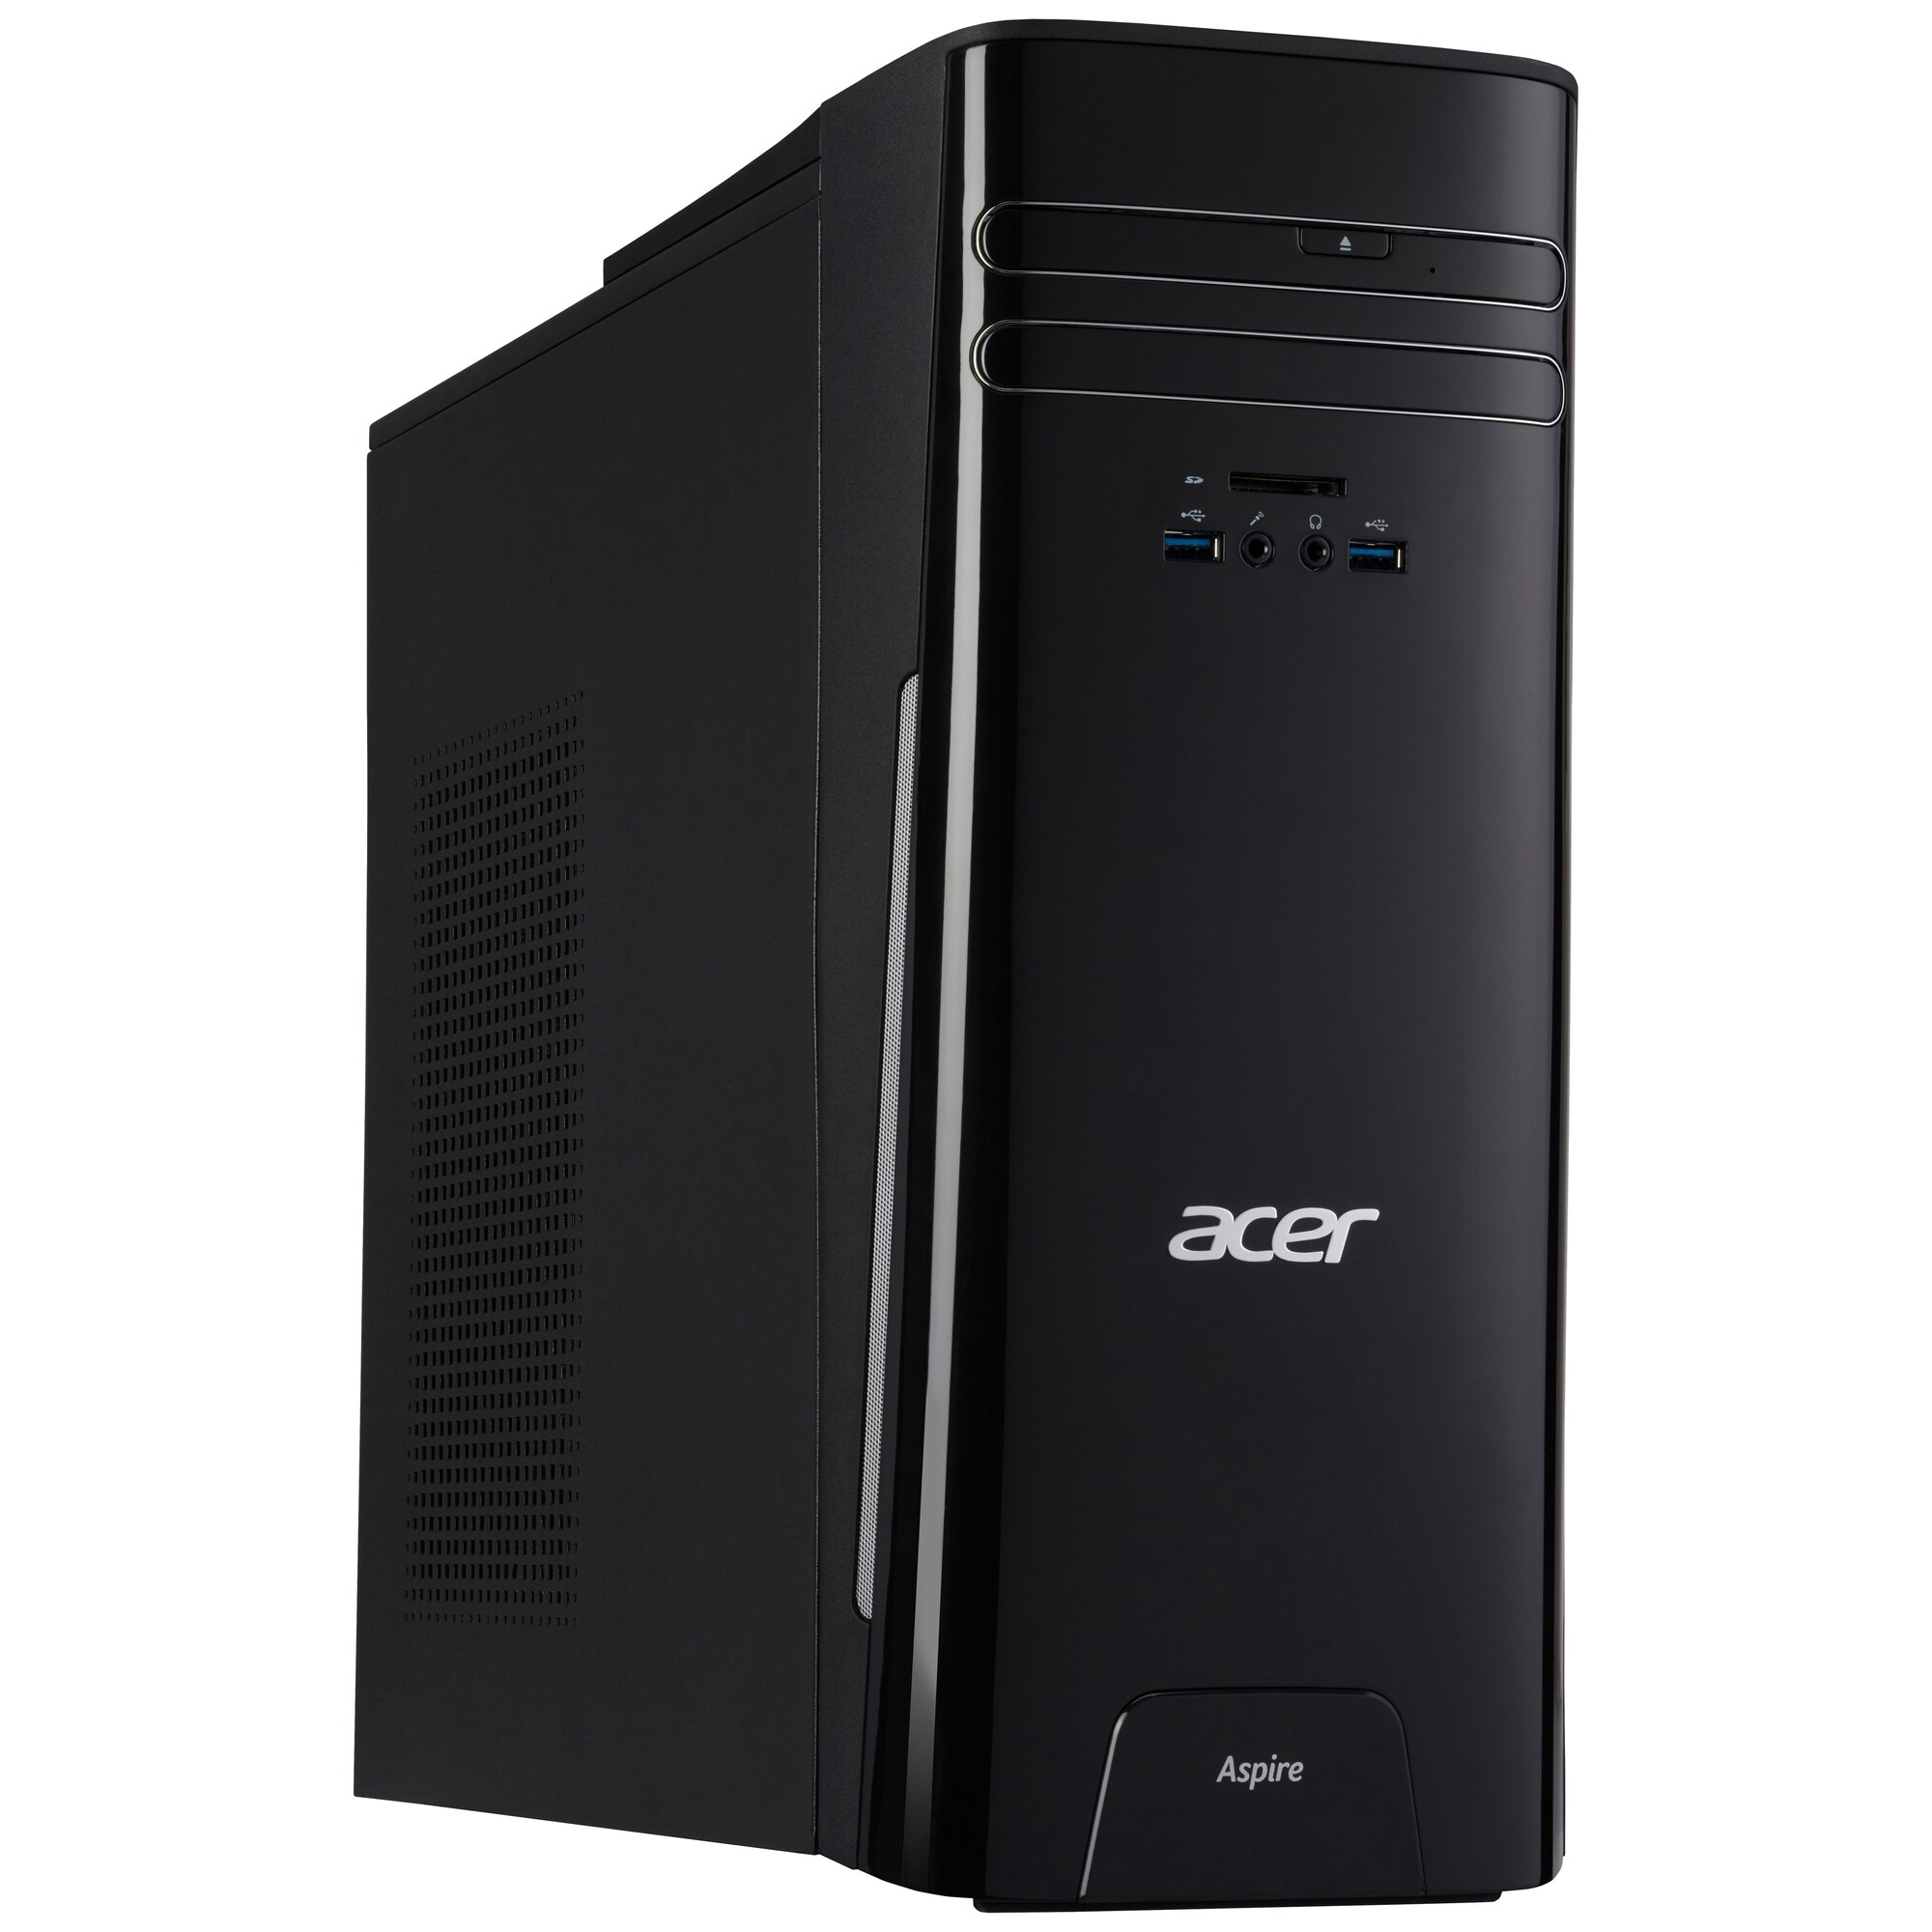 Acer Aspire TC-780 stationær computer | Elgiganten